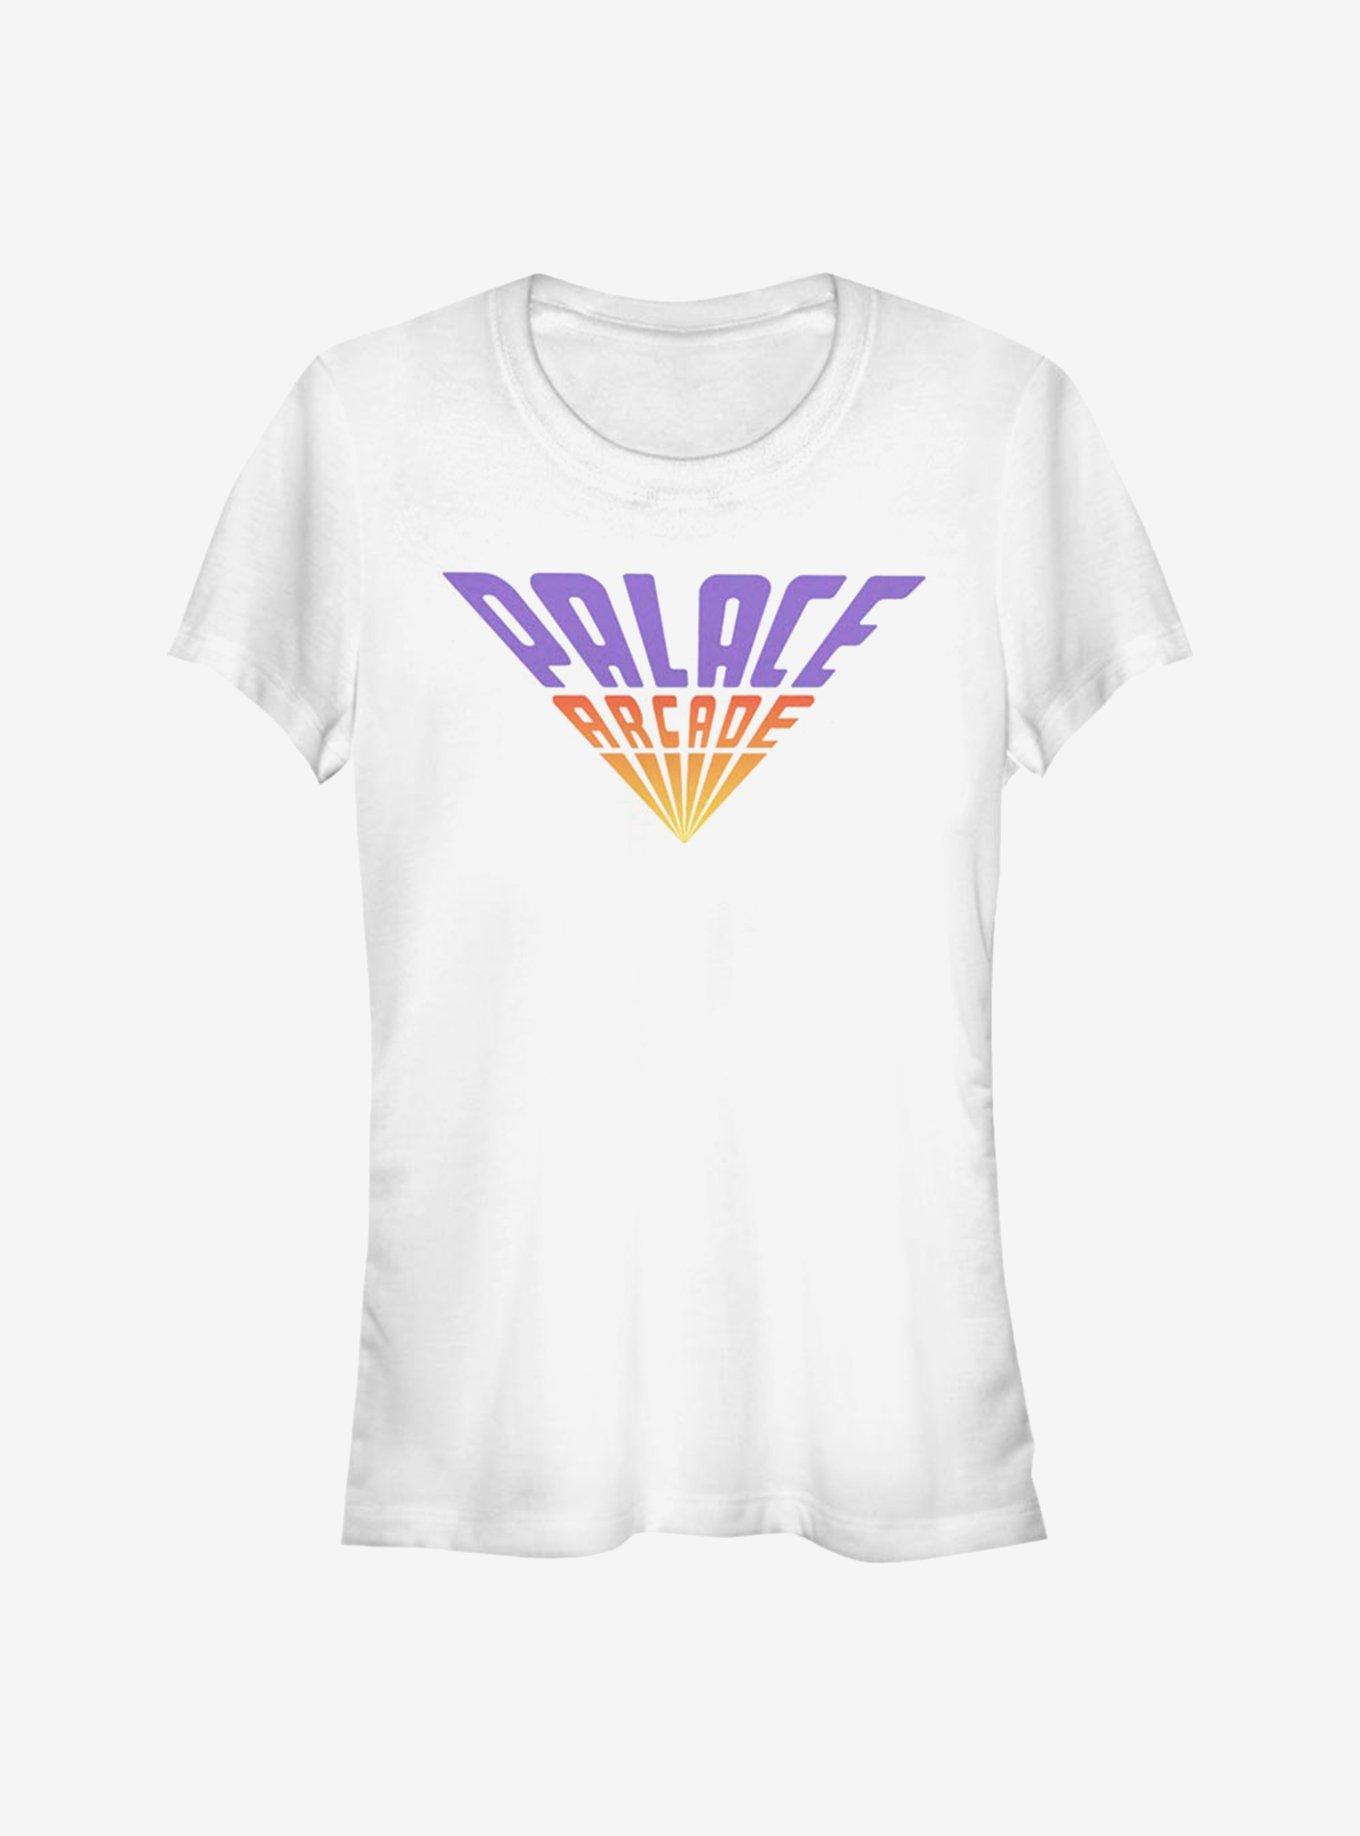 Stranger Things Palace Arcade Girls T-Shirt